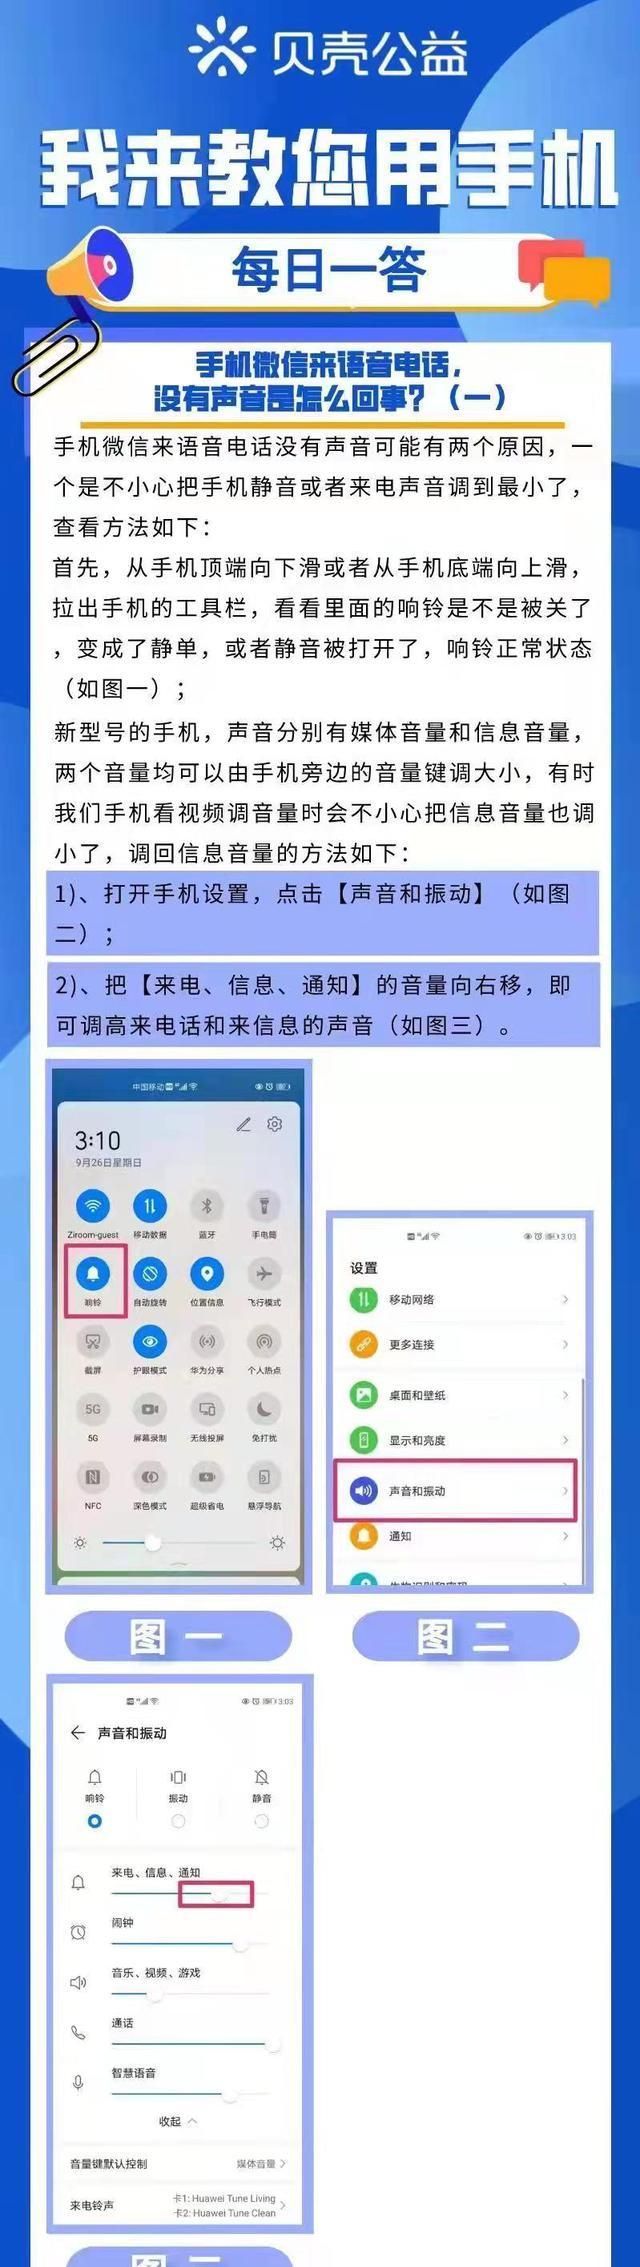 「郑州贝壳问答」手机微信来语音电话，没有声音提示是为何（一）